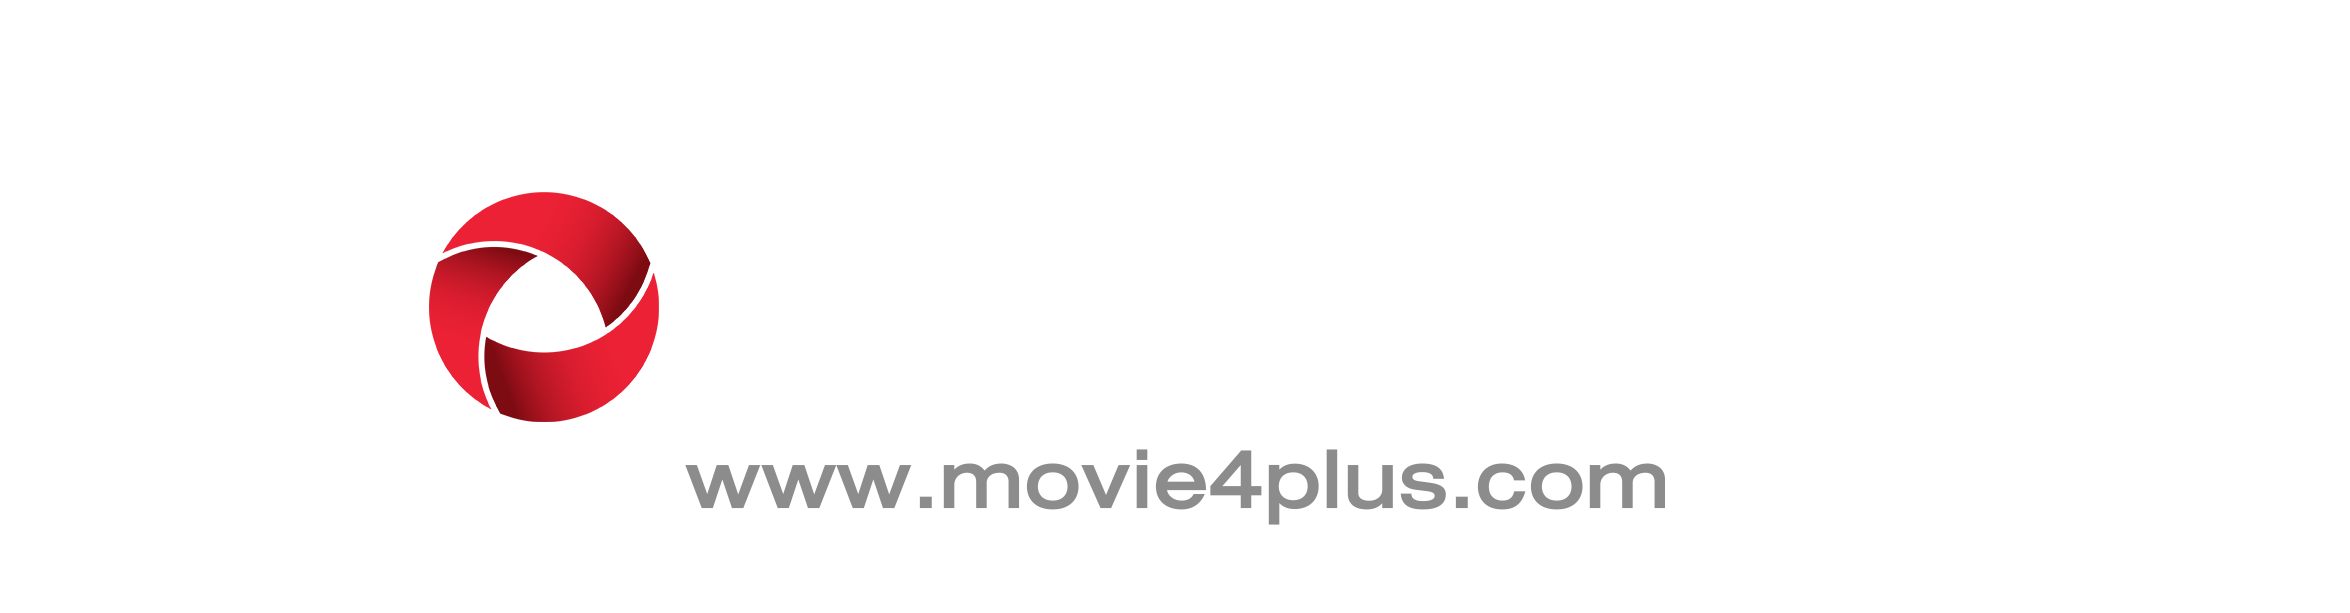 ดูหนังออนไลน์ฟรี Netflix Movie4plus ดูหนังใหม่ ดูฟรีไม่มีโฆษณา